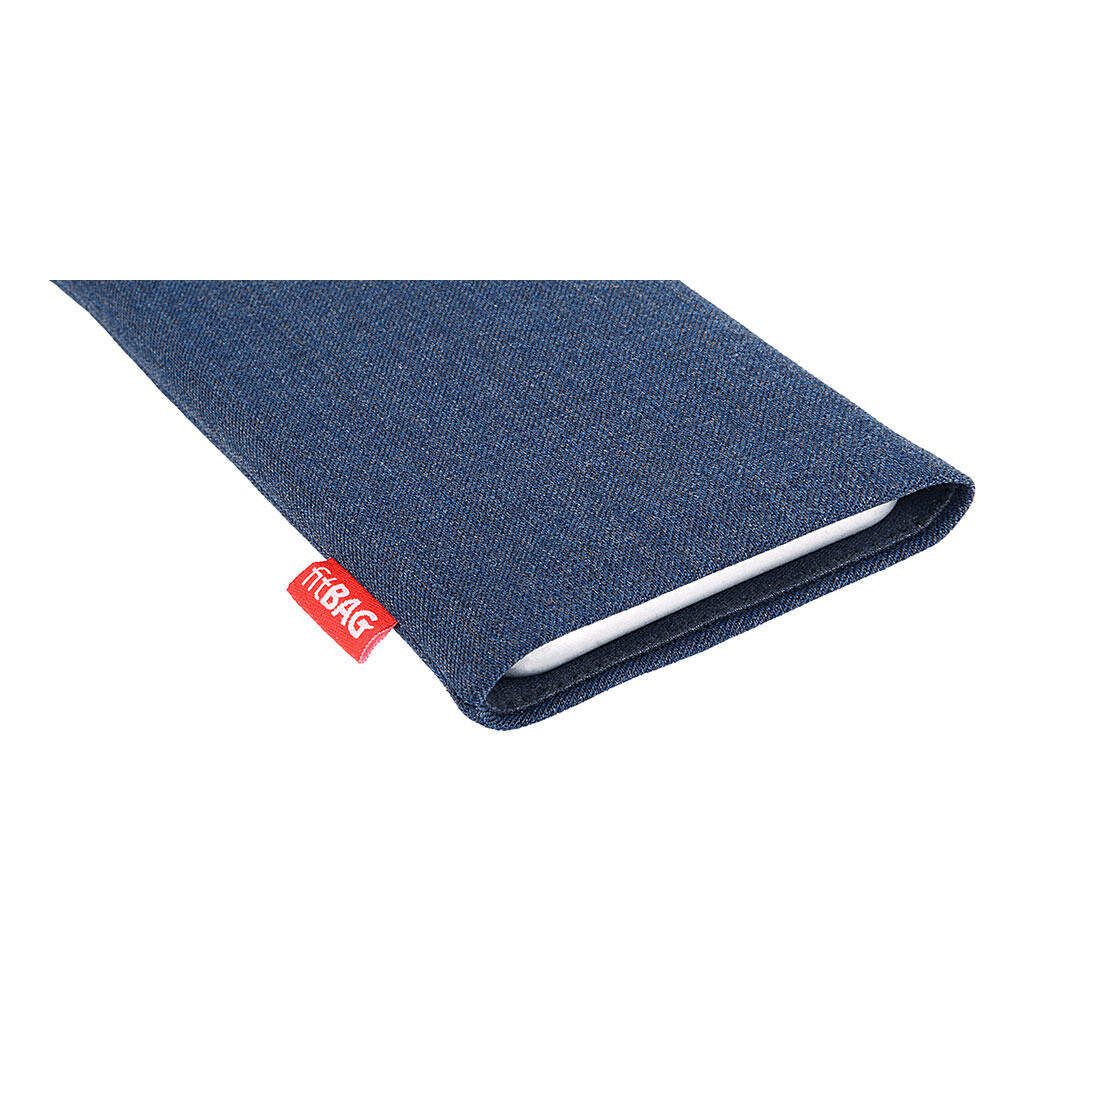 Hülle mit Reinigungsfunktion fitBAG Jive Blau Handytasche Tasche aus Textil-Stoff mit Microfaserinnenfutter für Motorola Moto G7 Plus Made in Germany 